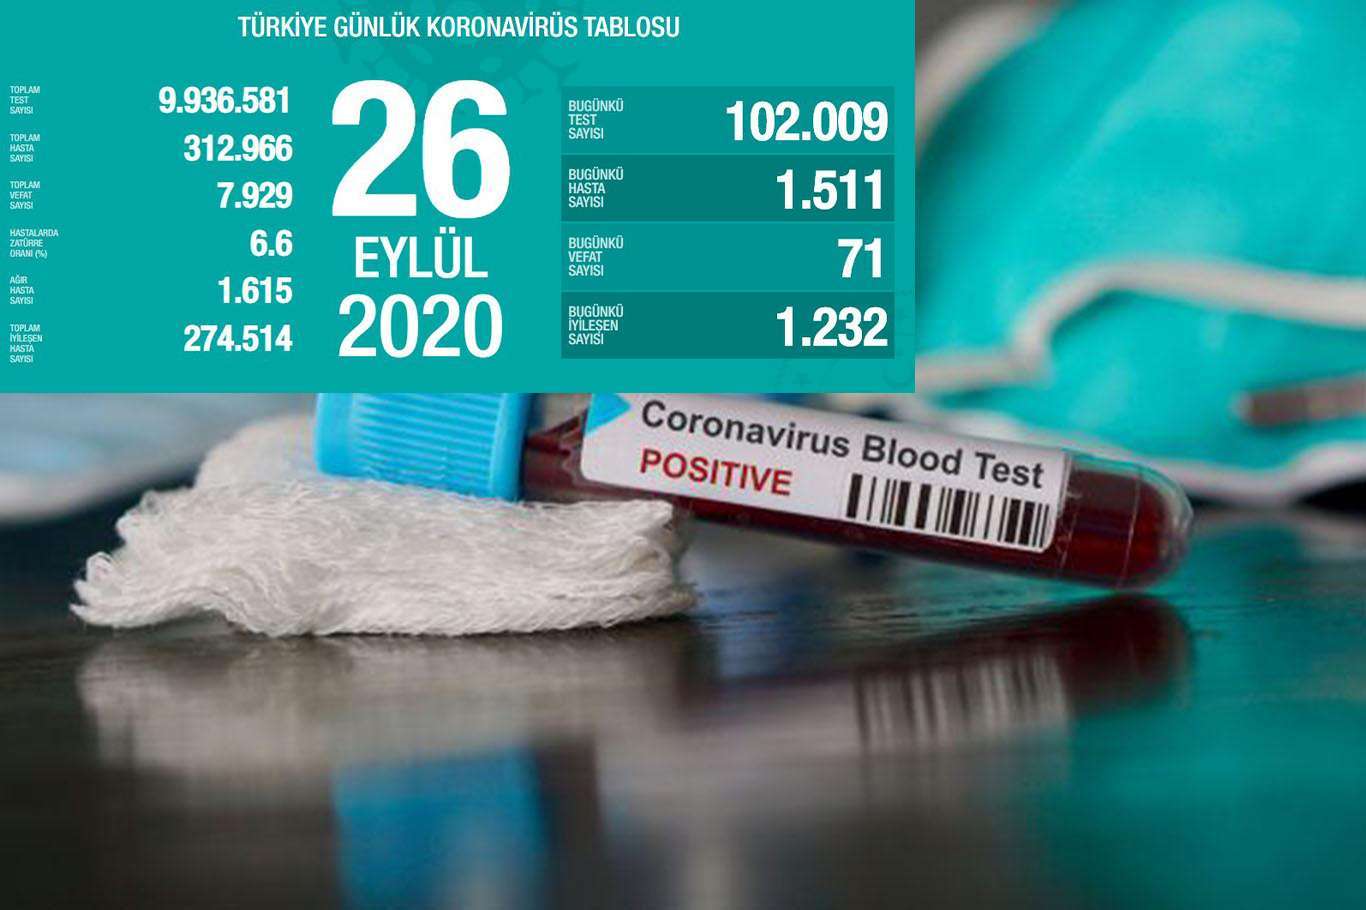 Turkey’s coronavirus death toll reaches 7,929